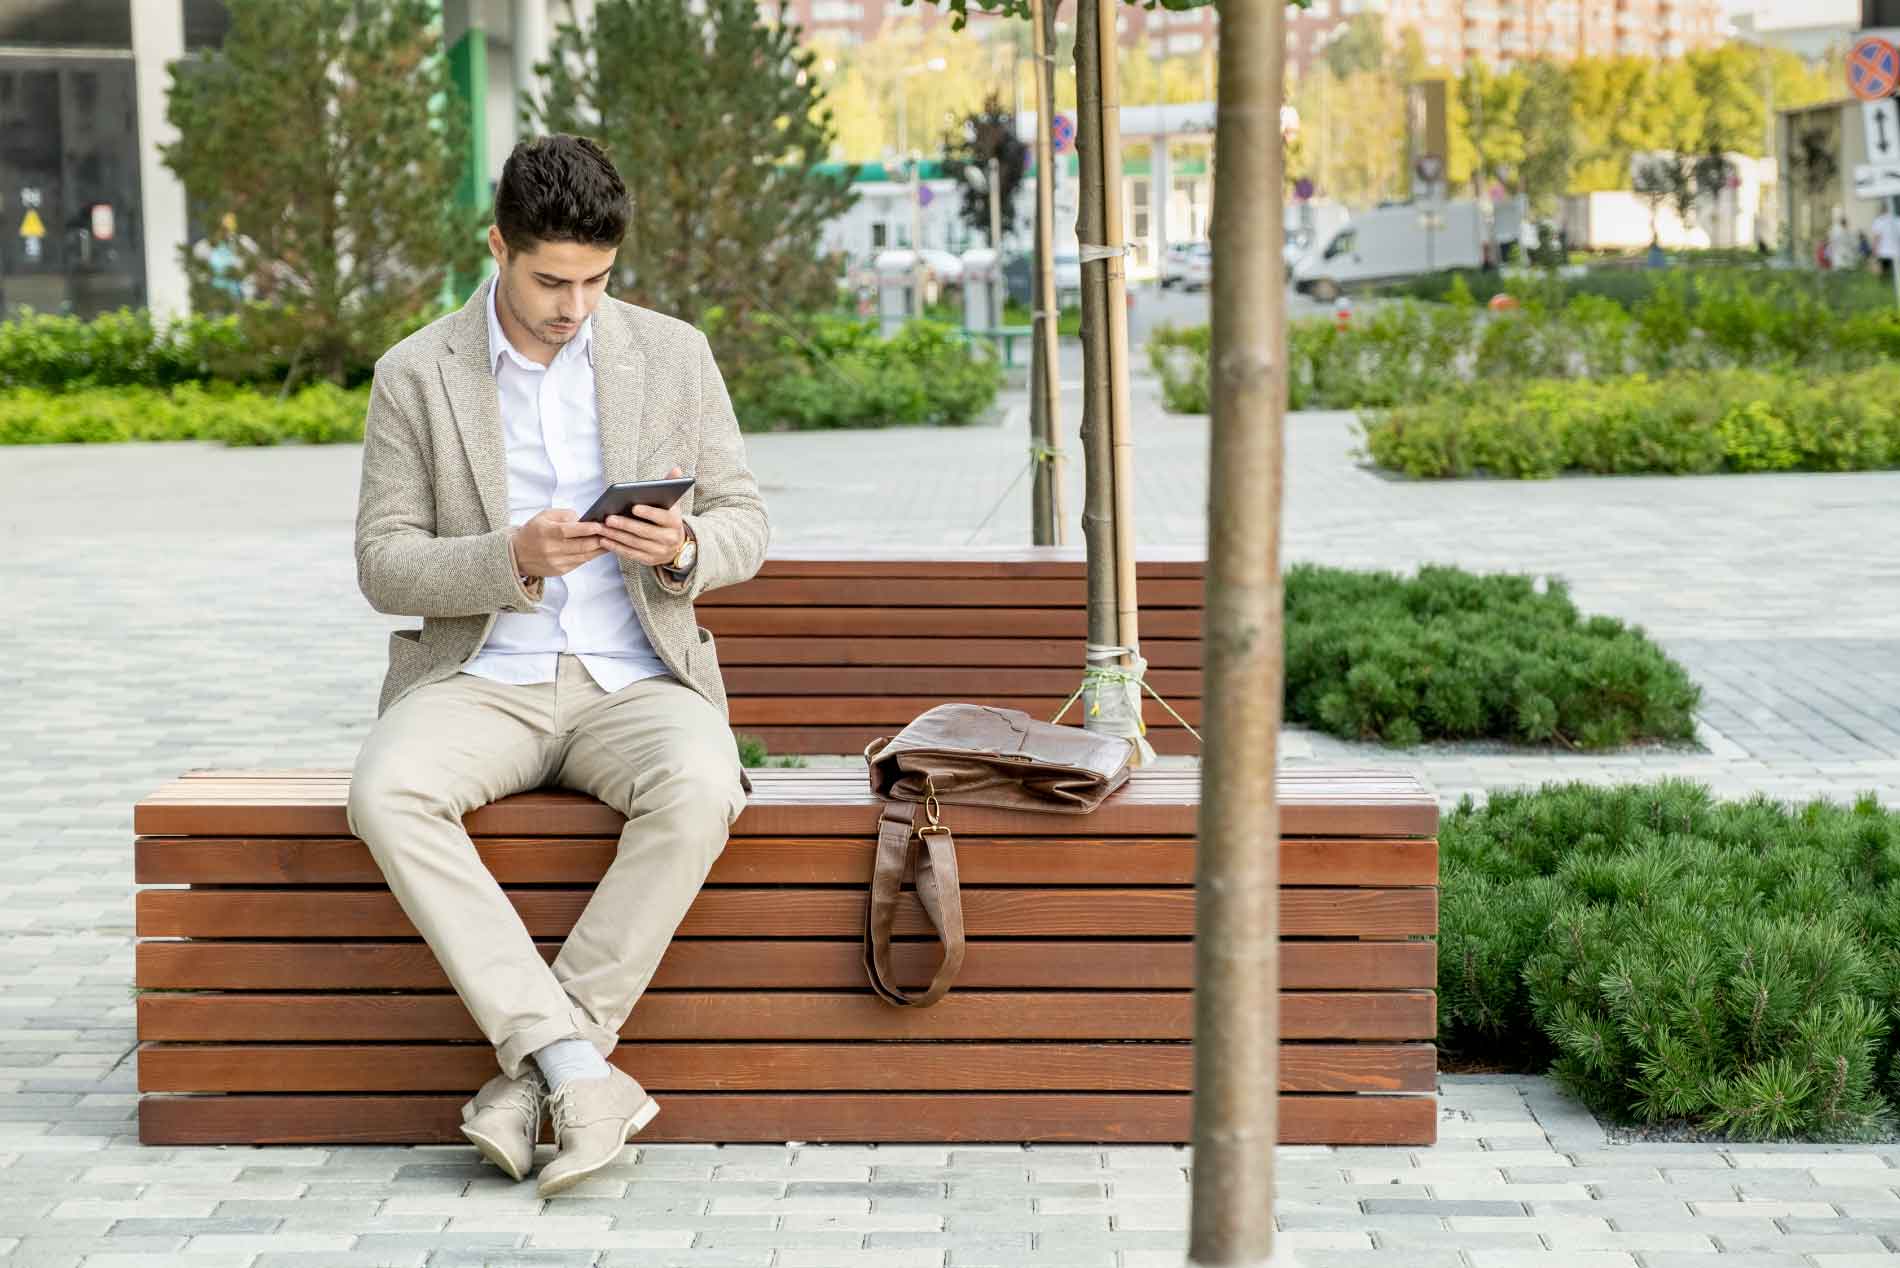 Joven ejecutivo sentado en una banca en exteriores mirando su tablet.